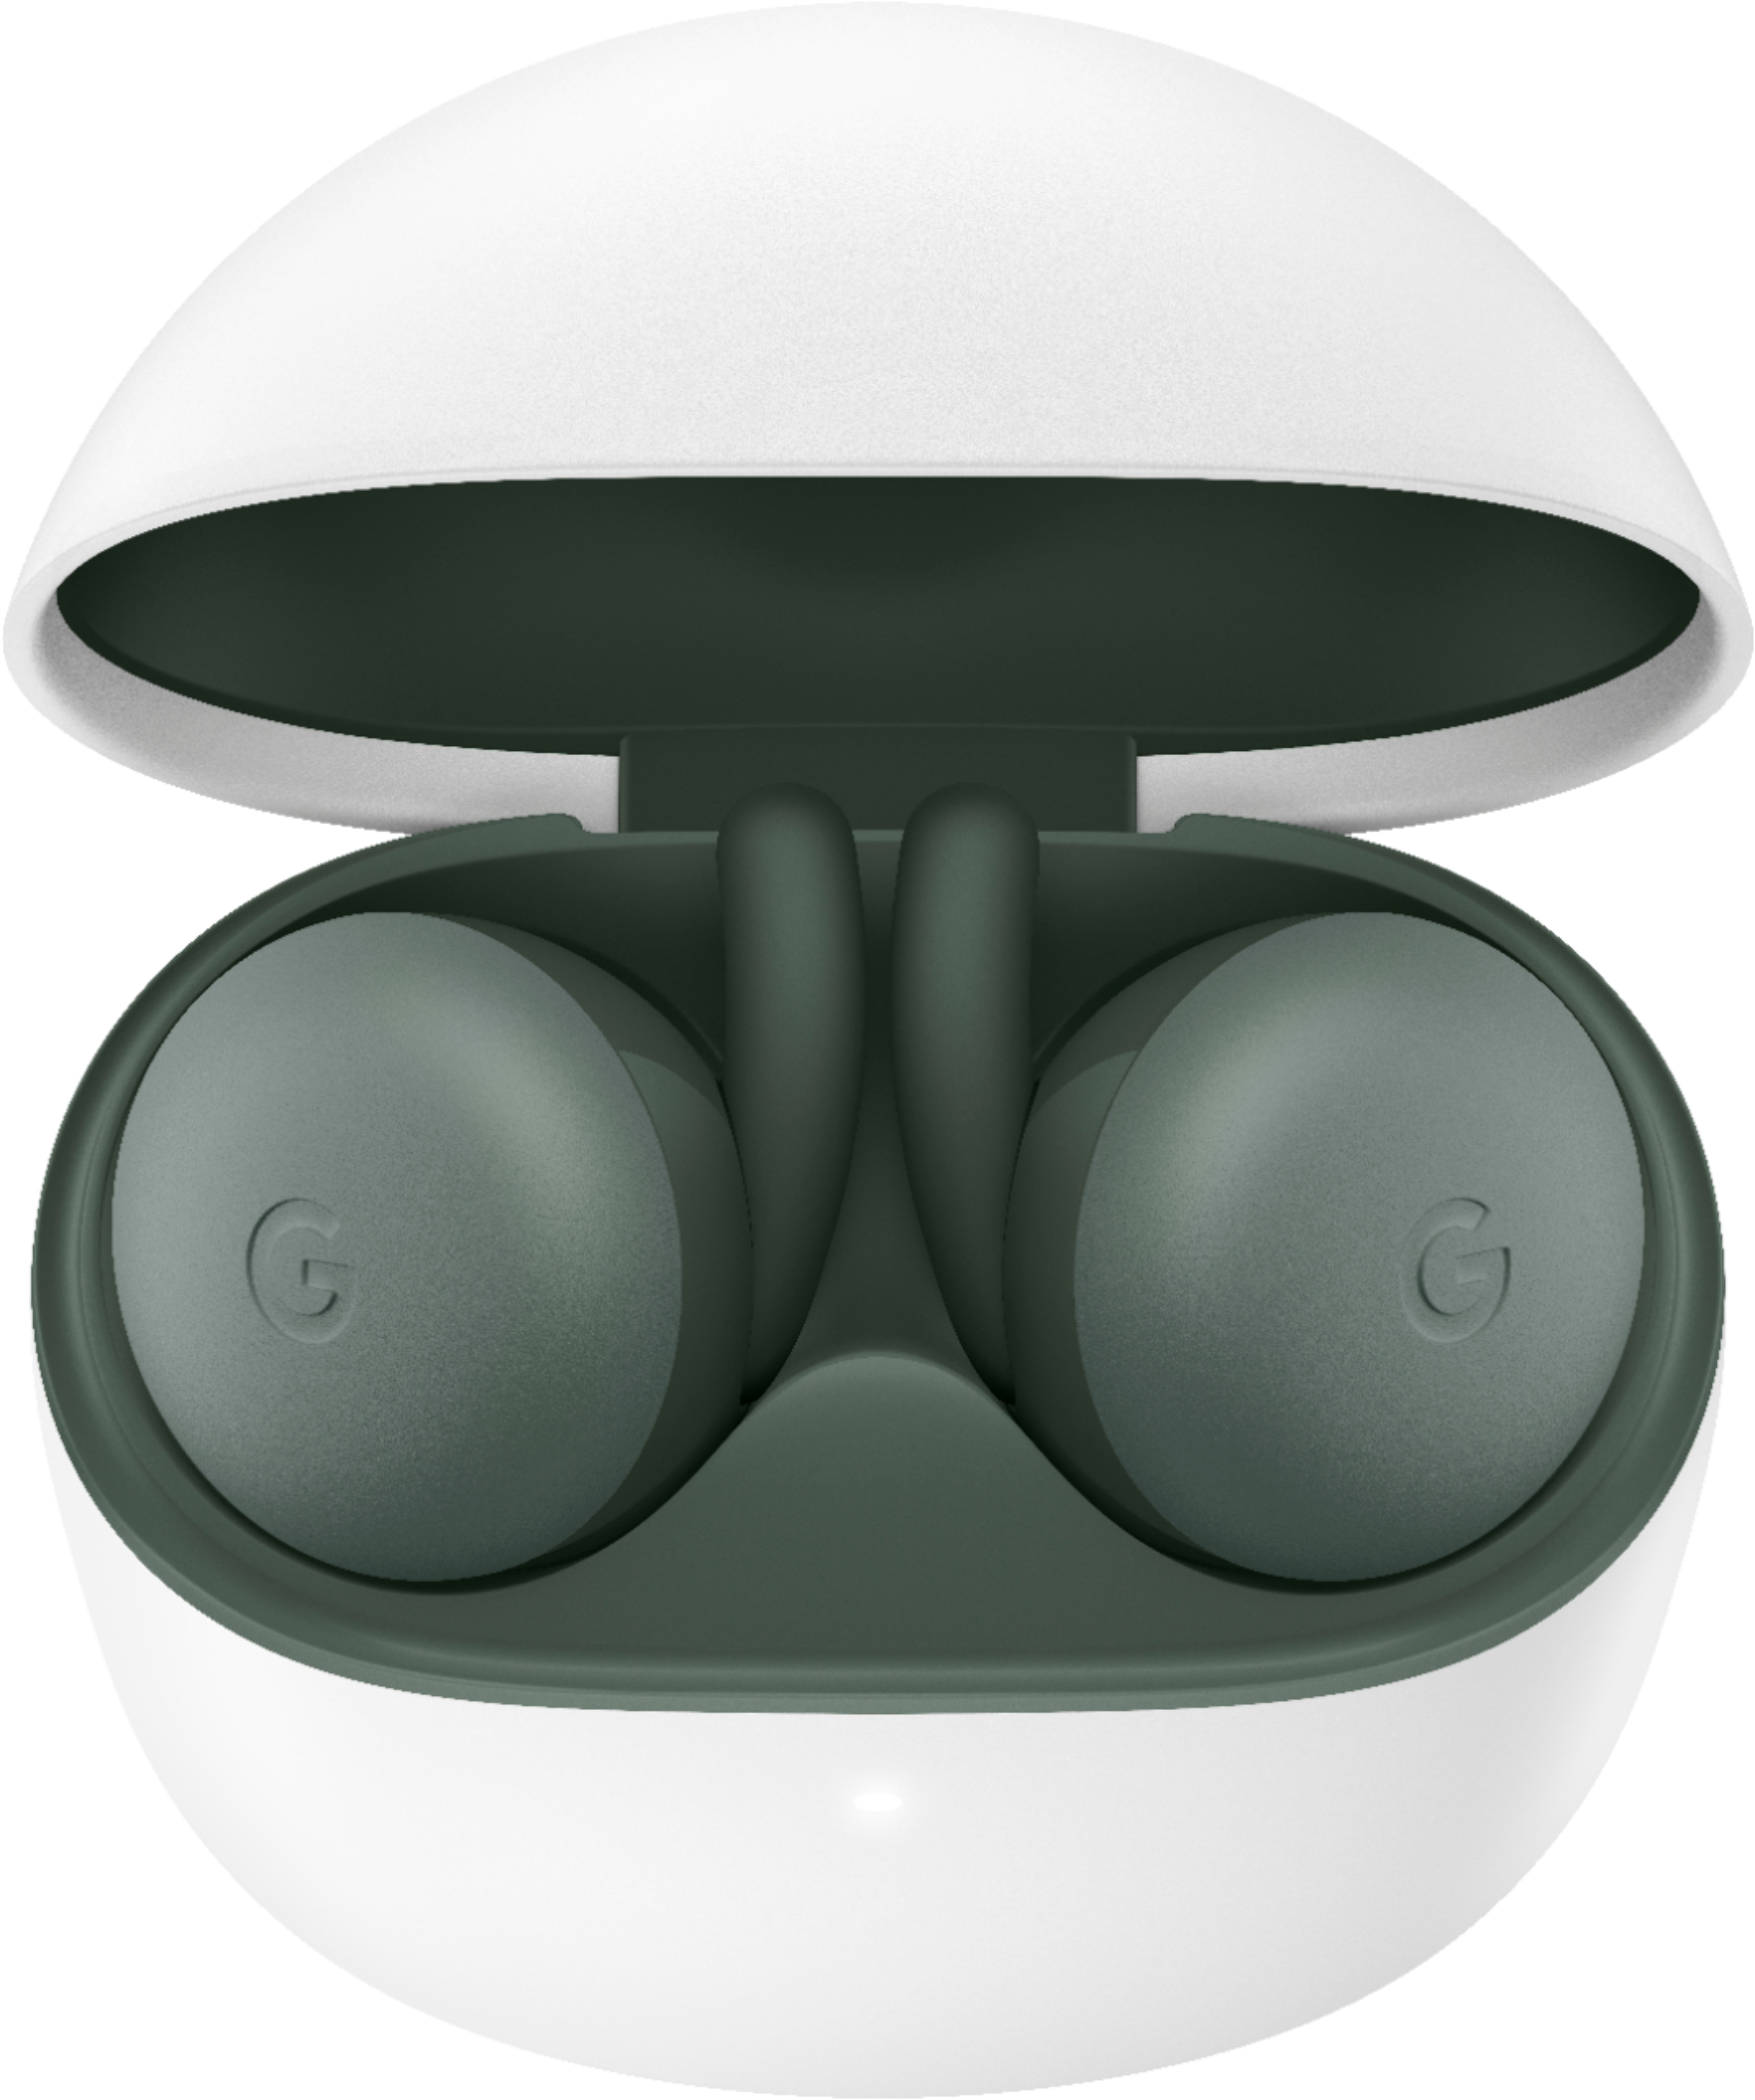 Google Pixel Buds A-Series True Wireless In-Ear Headphones Olive 